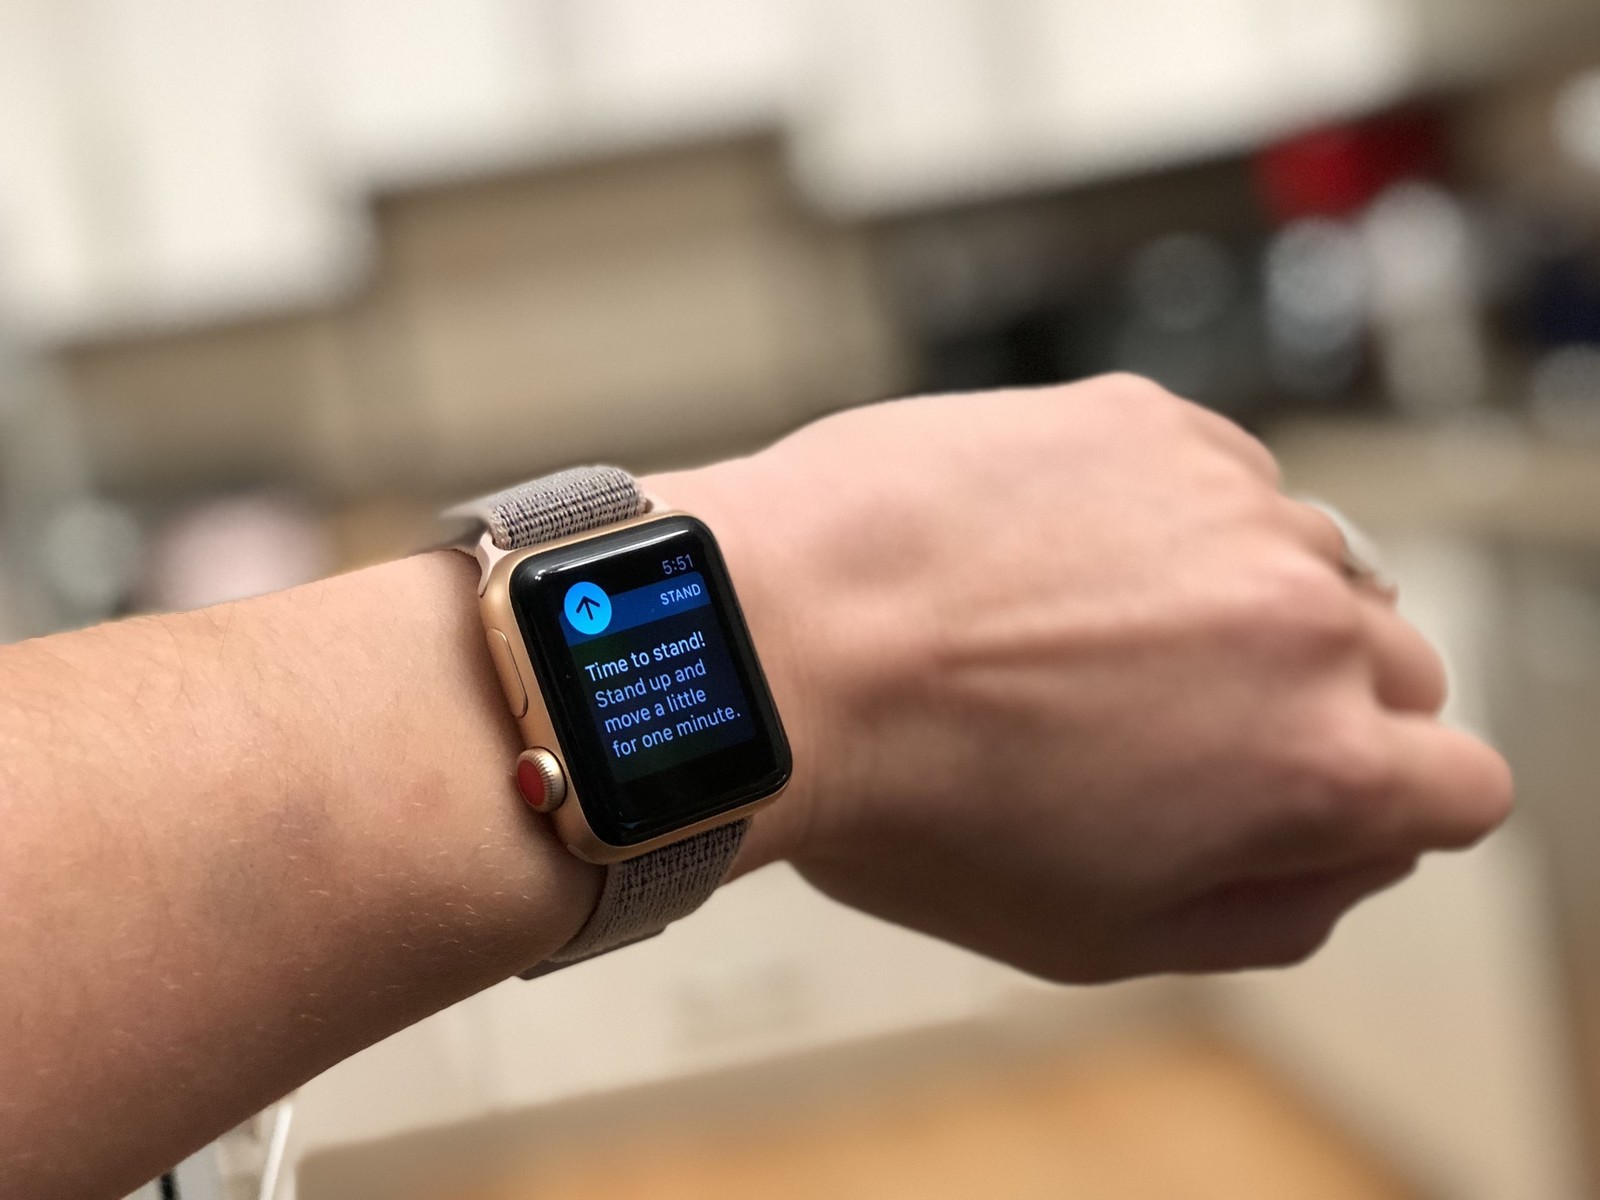 Apple Watch – On it’s feet